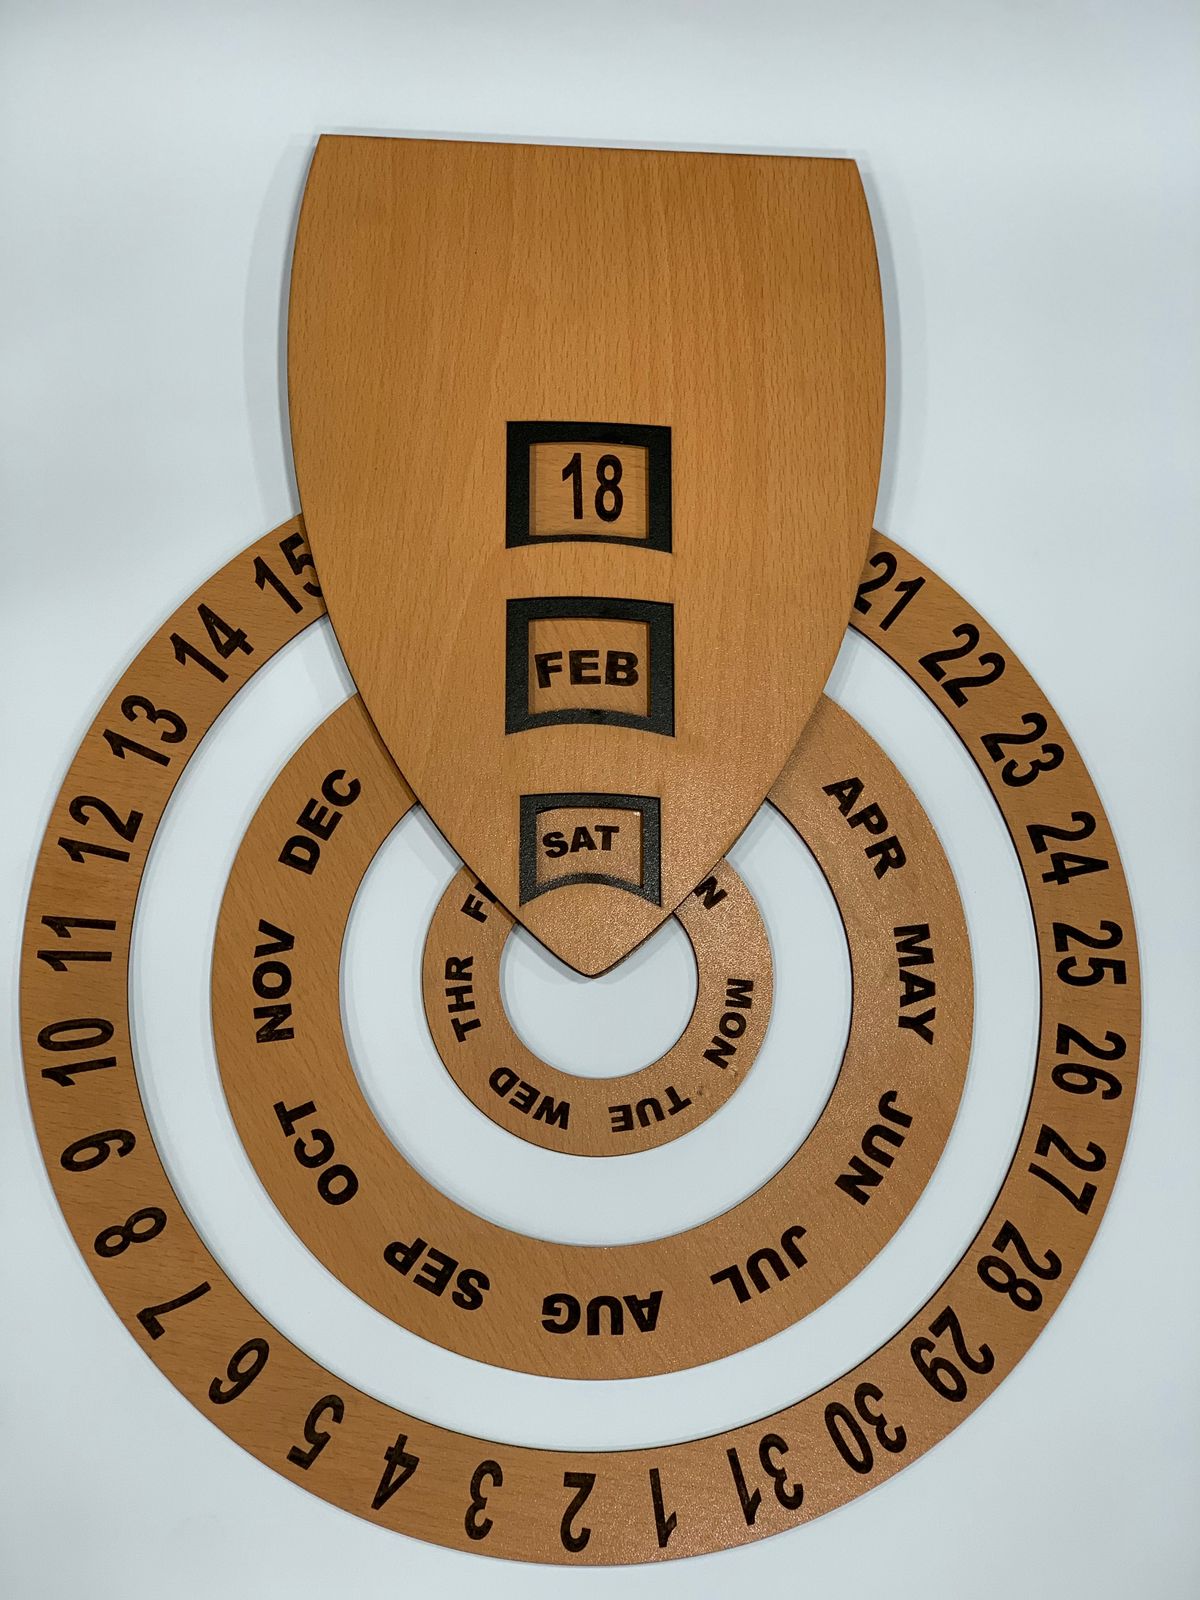 Circular Rotary Wooden Calendar